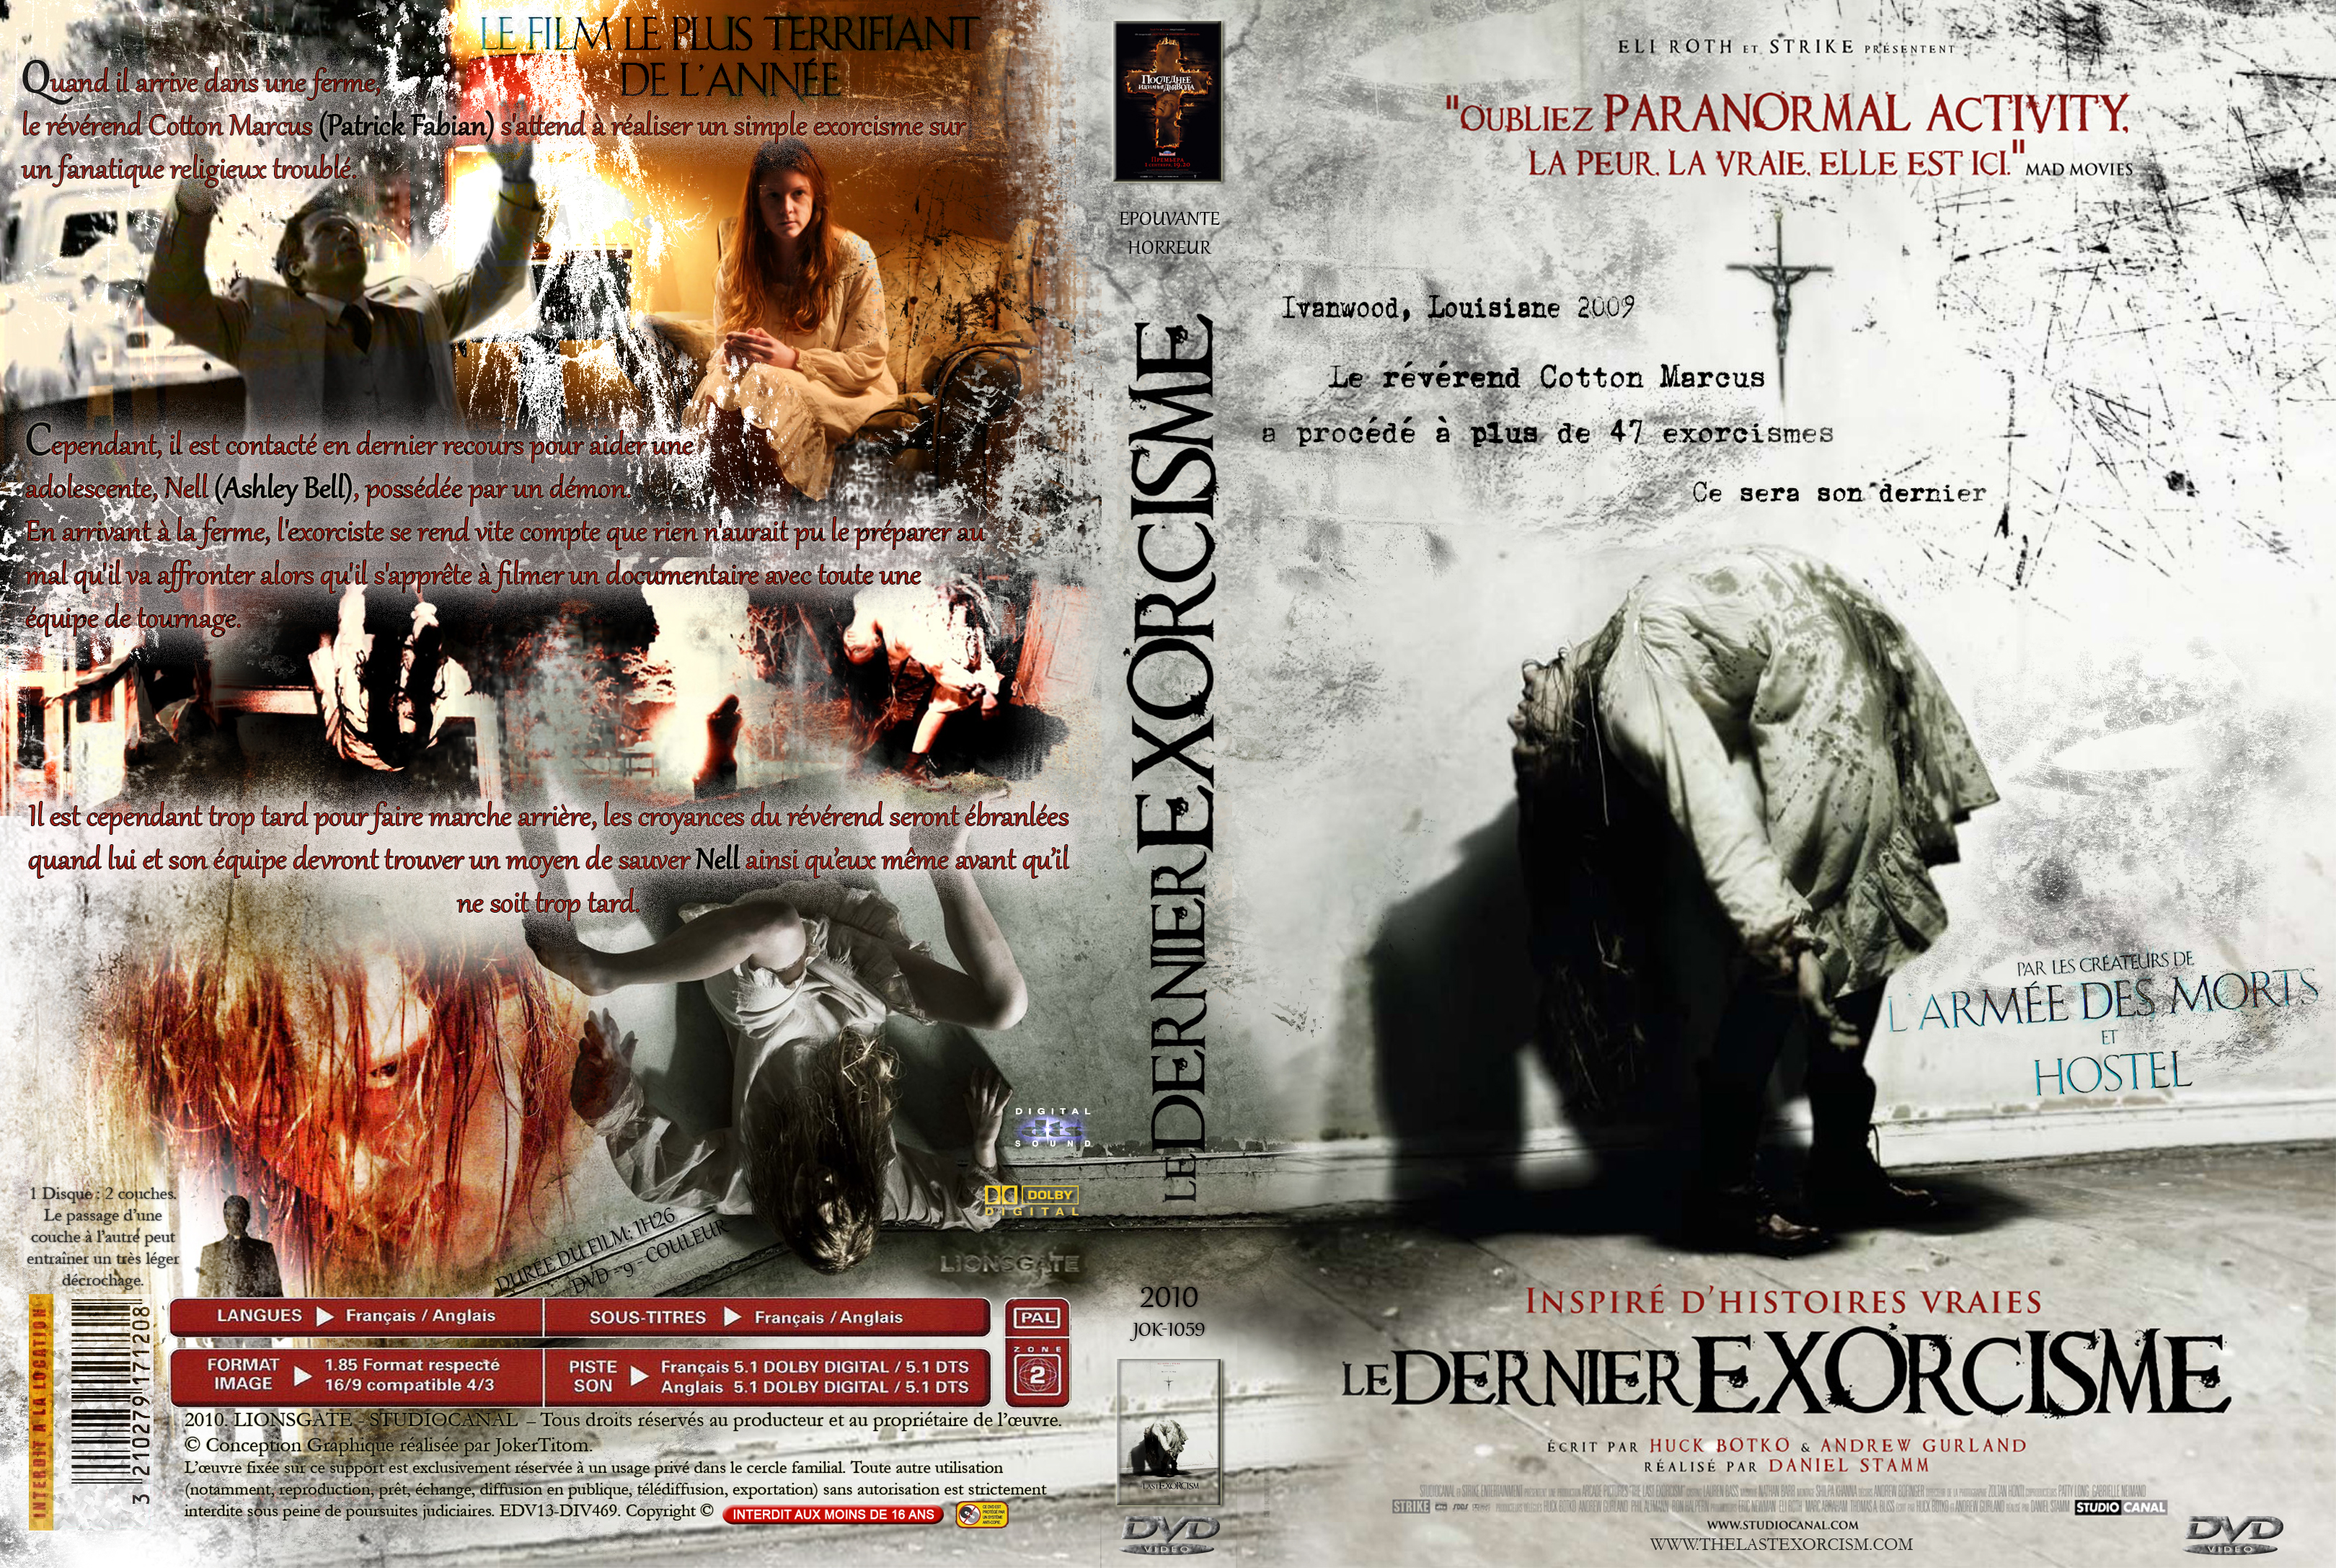 Jaquette DVD Le dernier exorcisme custom